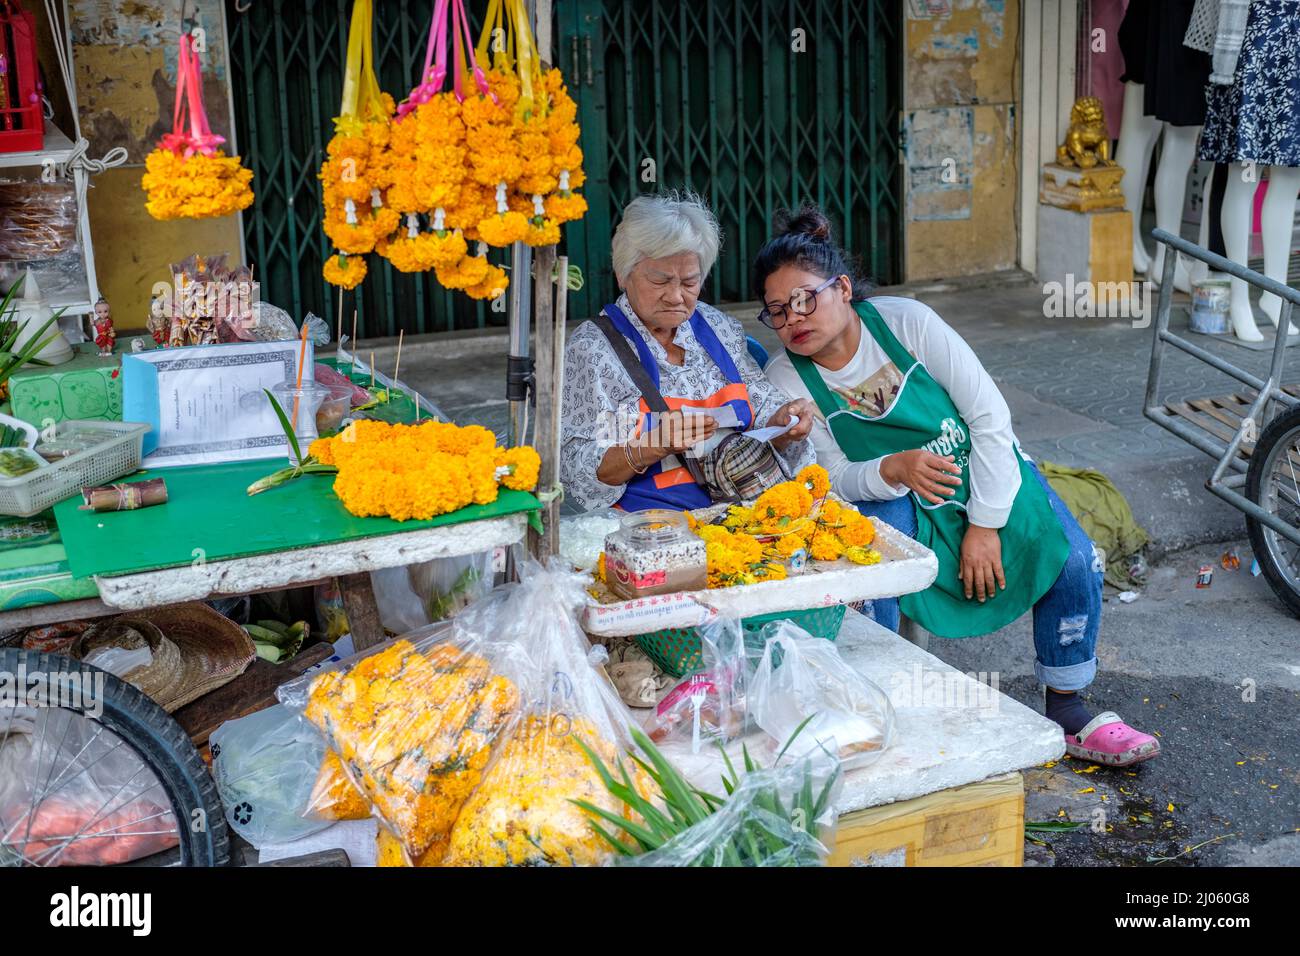 Femme faisant Phuang Malai à Hua Hin. C'est une guirlande florale traditionnelle utilisée comme un charme chanceux et souvent vue dans les voitures et les taxis Banque D'Images